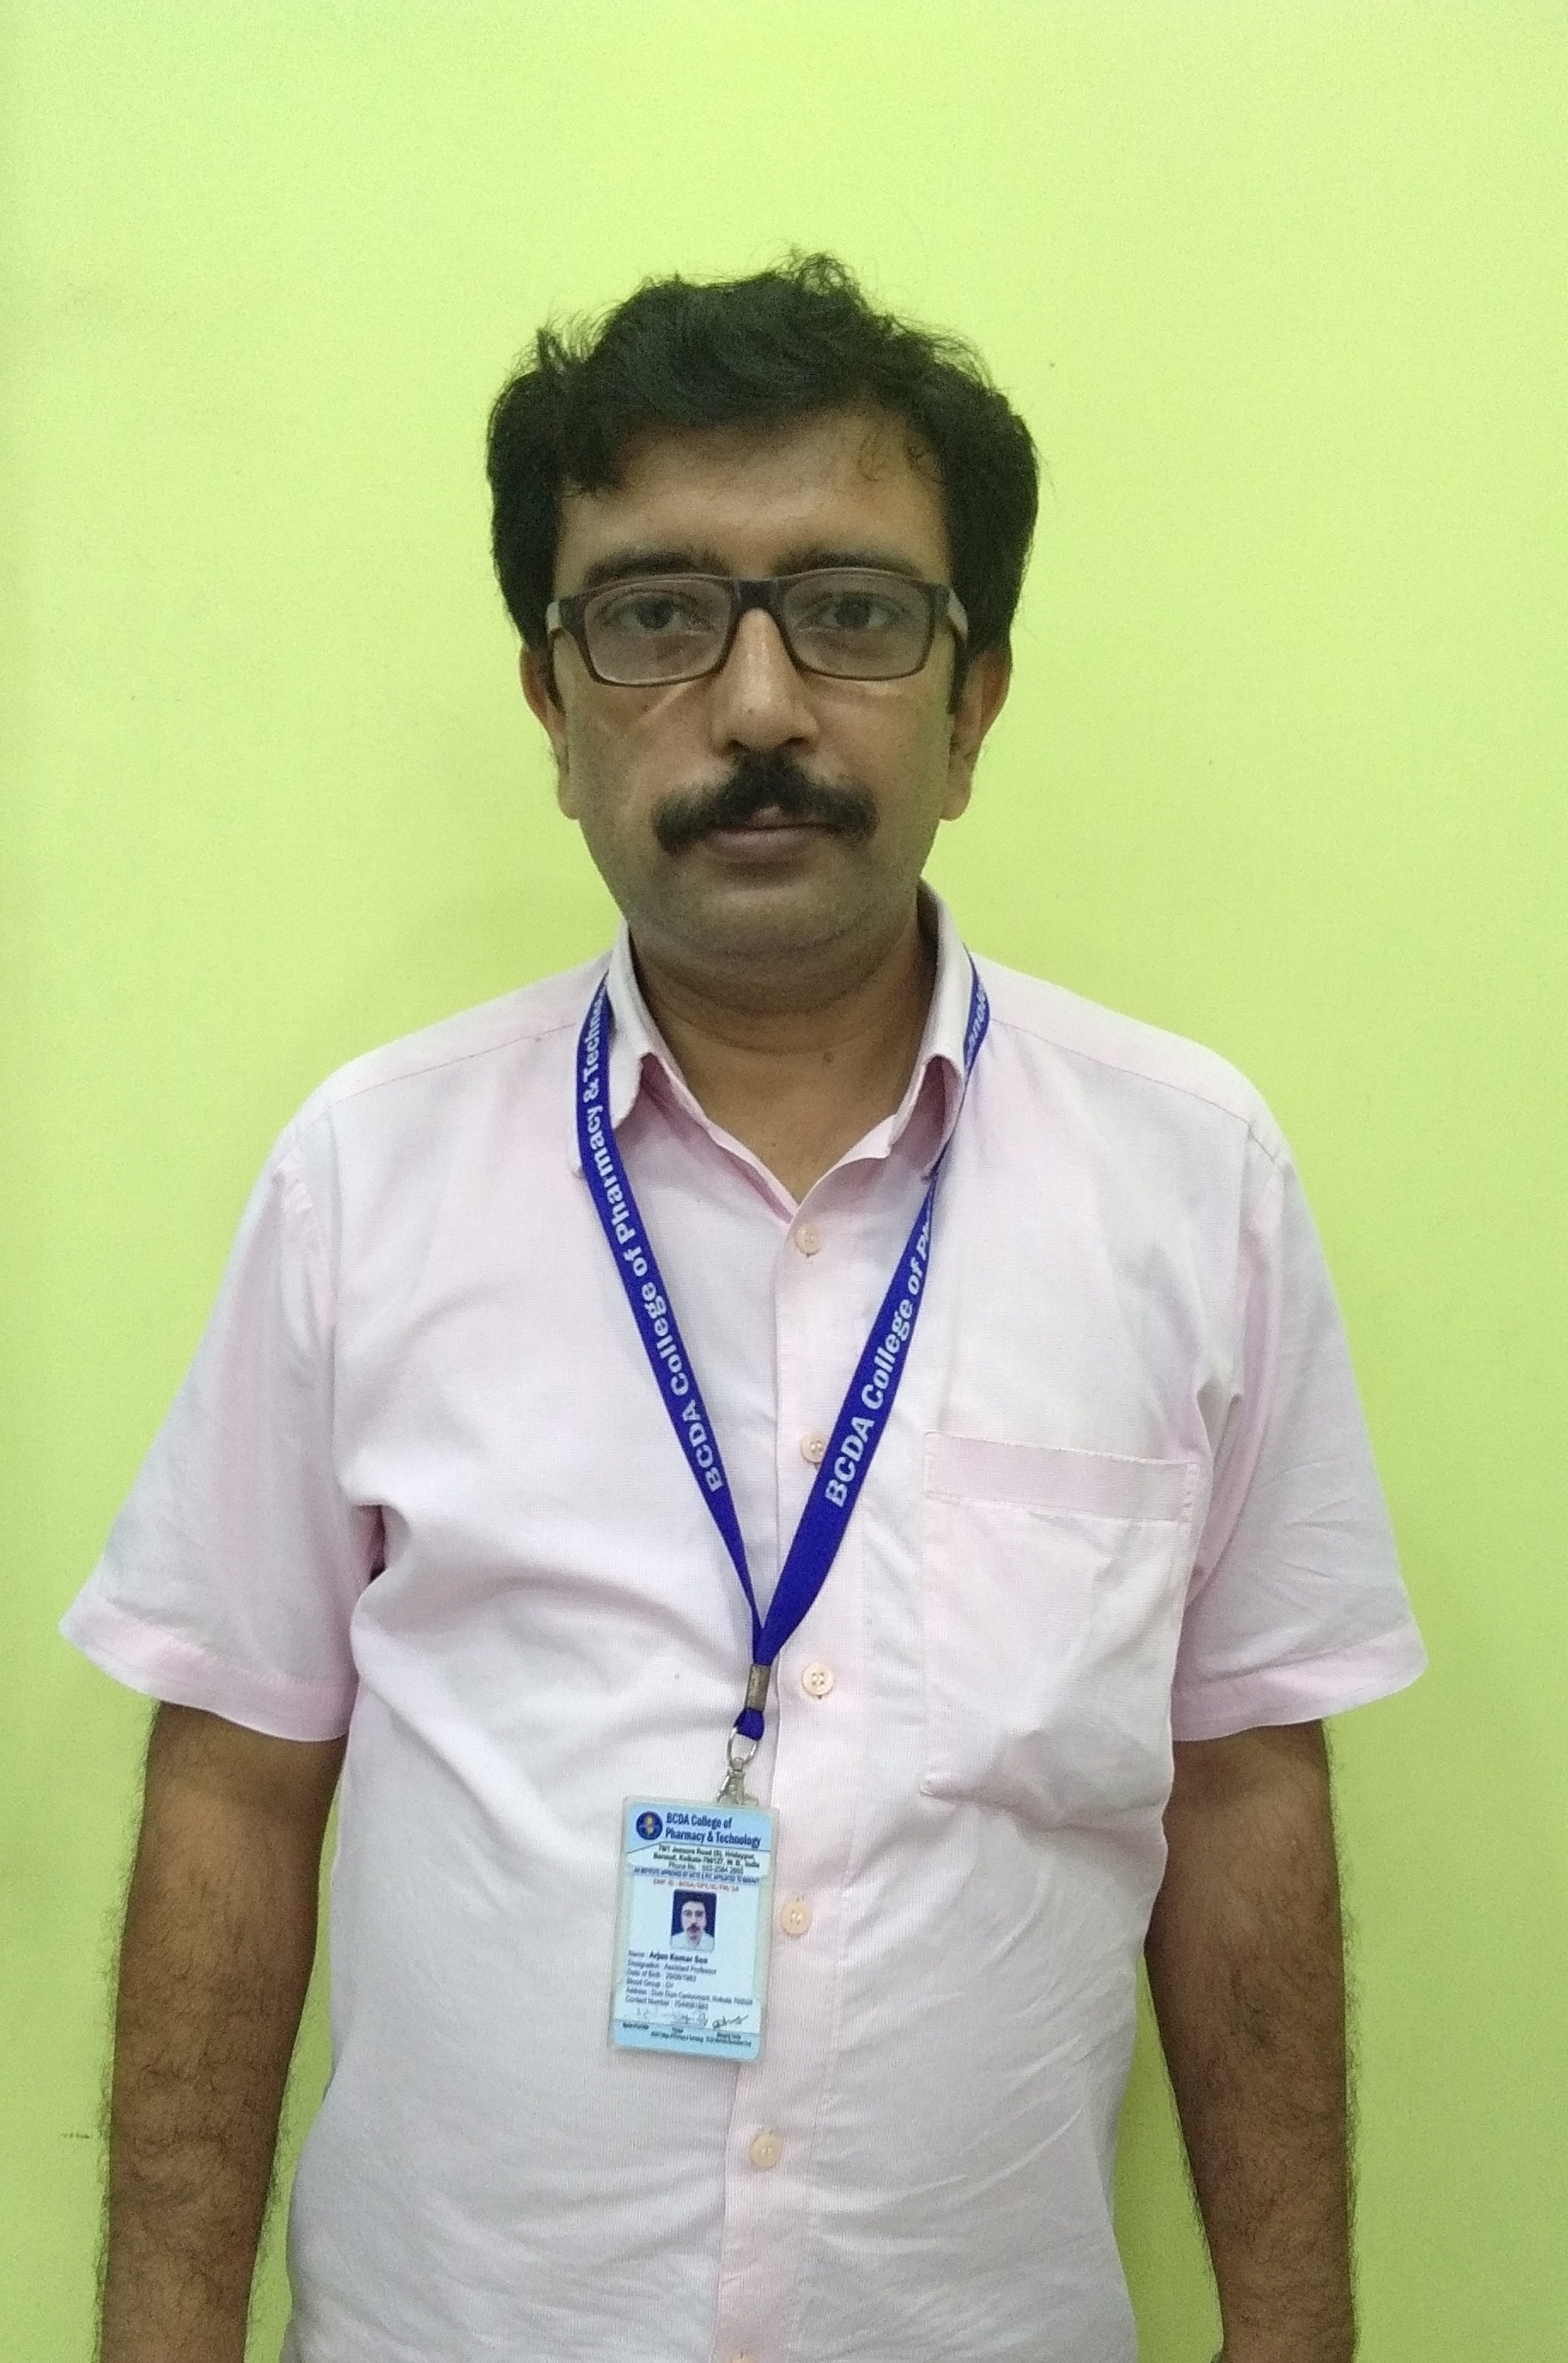 Mr. Arjun Kumar Sen